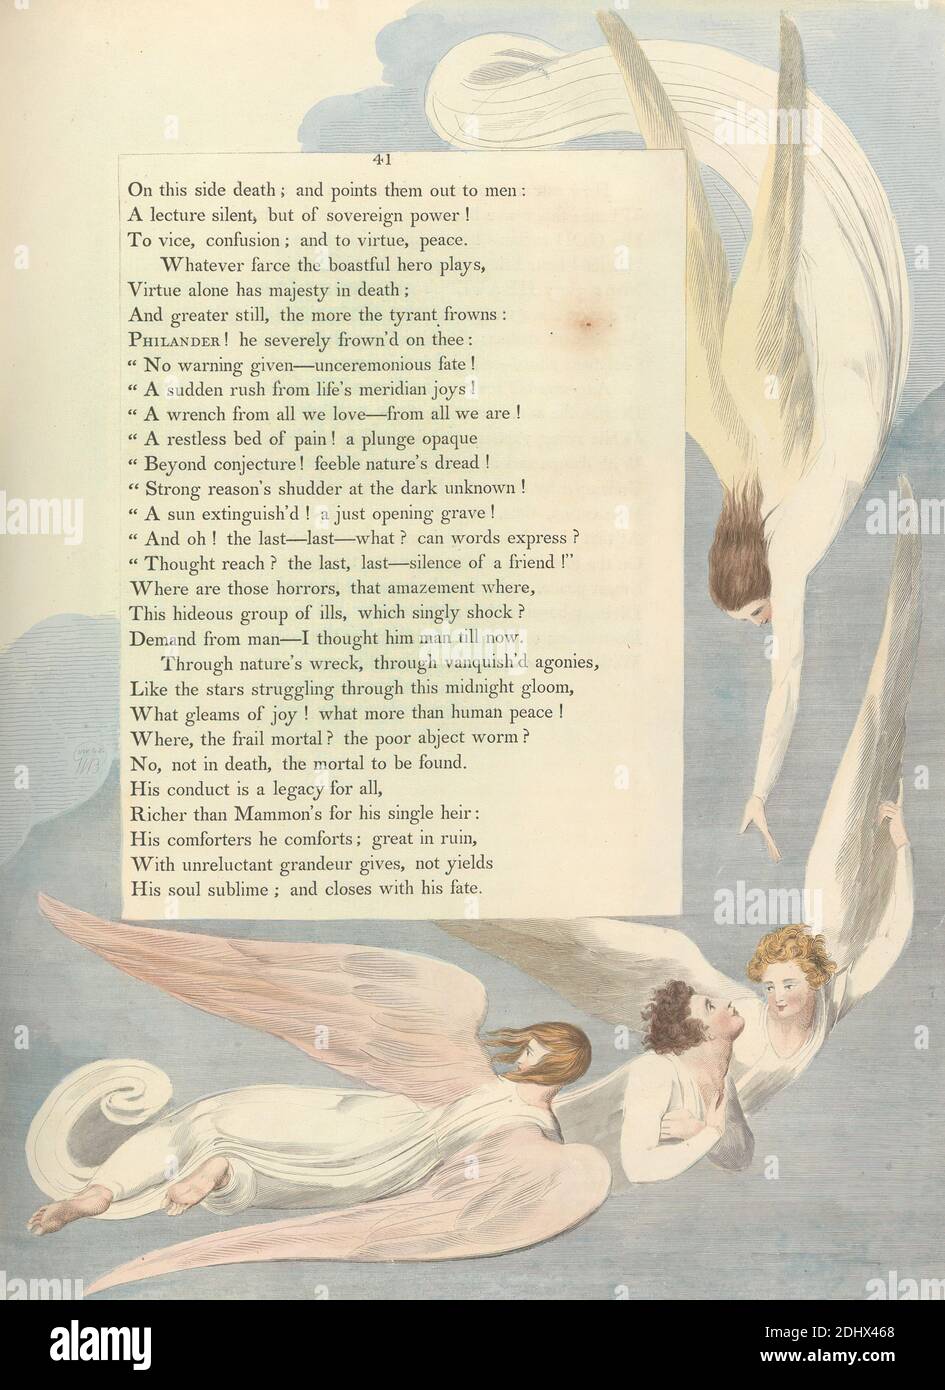 Pensamientos de la Noche de los jóvenes, Página 41, 'una Marca radiante, el lecho de muerte del justo', impresión hecha por William Blake, 1757–1827, British, ca. 1797, grabado y grabado de líneas con acuarela sobre papel de paloma crema de grosor moderado, ligeramente texturizado, columna: 16 3/4 pulgadas (42.5 cm), Hoja: 16 1/2 x 12 5/8 pulgadas (41.9 x 32.1 cm), y placa: 16 1/8 x 12 5/8 pulgadas (41 x 32.1 cm), ángeles, nubes, tema literario, texto, alas Foto de stock